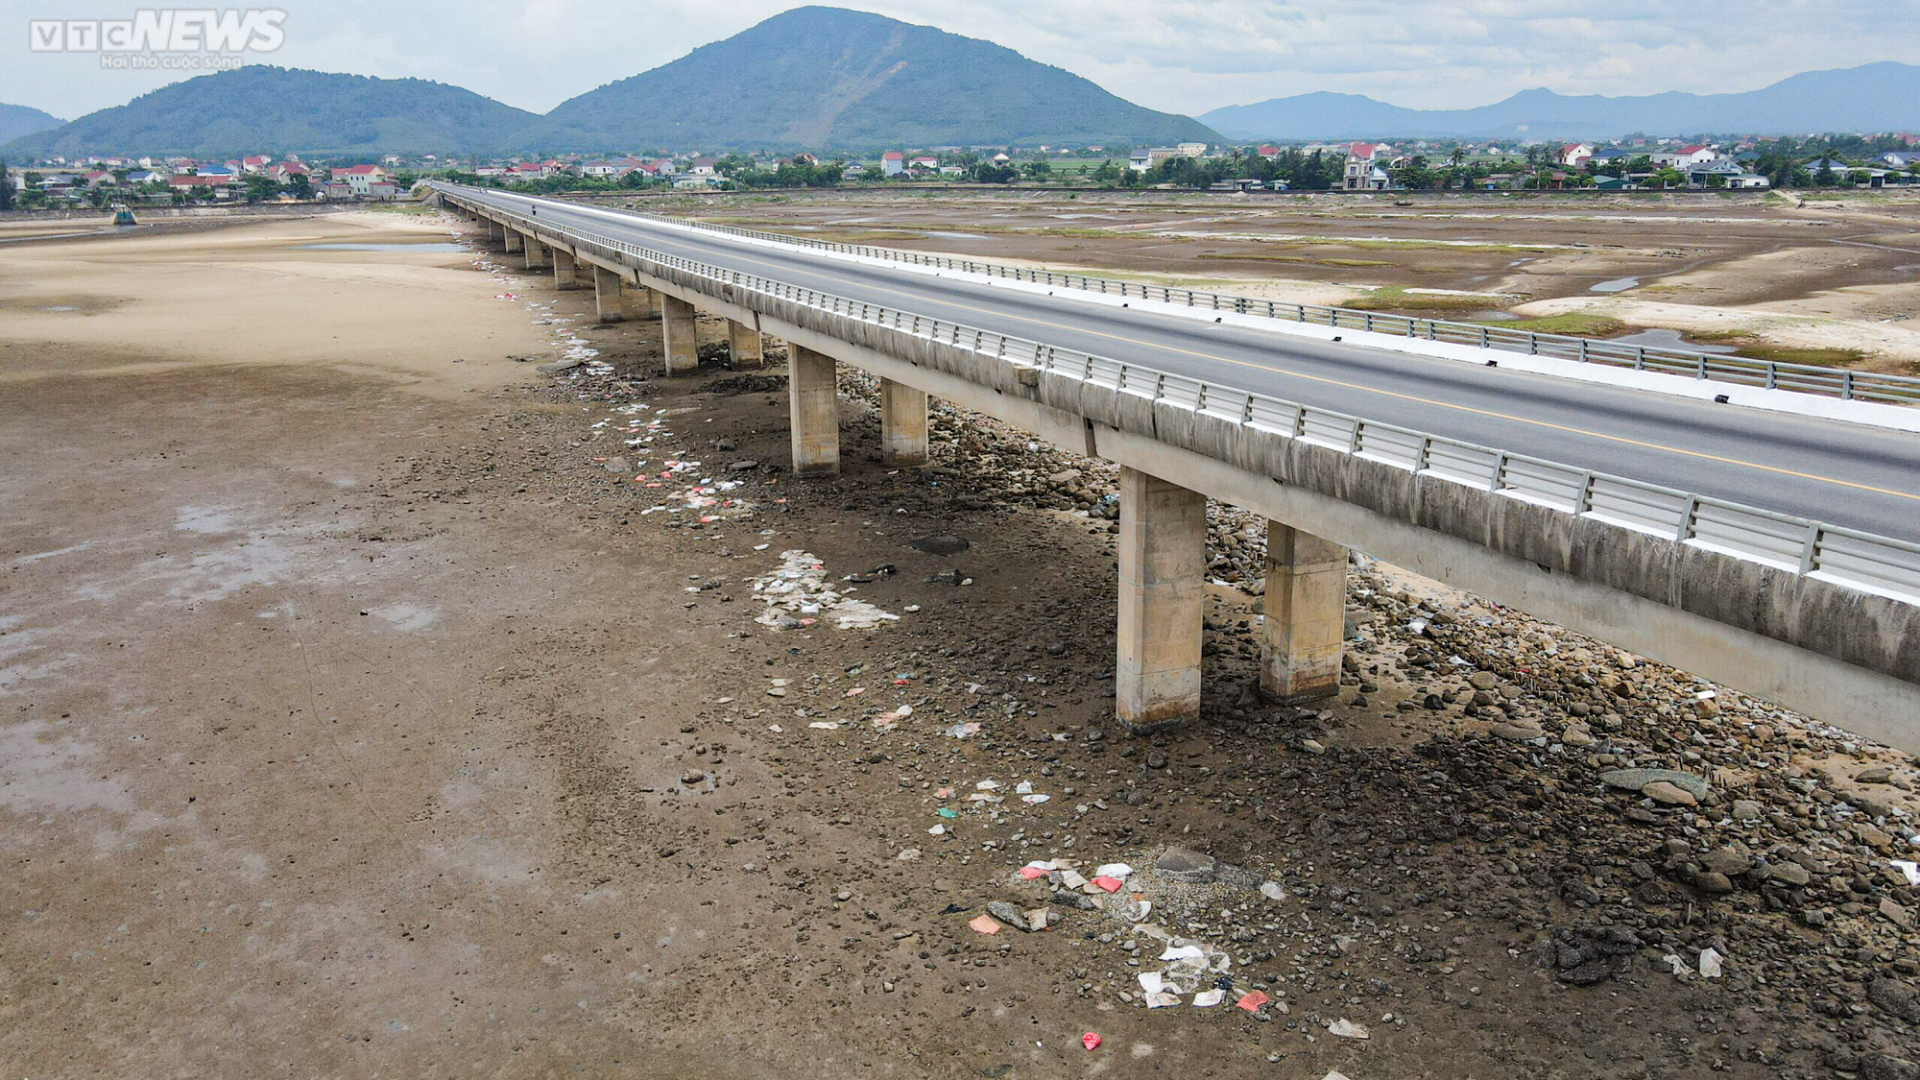 Hàng trăm tấn ‘rác’ bị bỏ rơi dưới chân cầu 500 tỷ đồng - Ảnh 8.